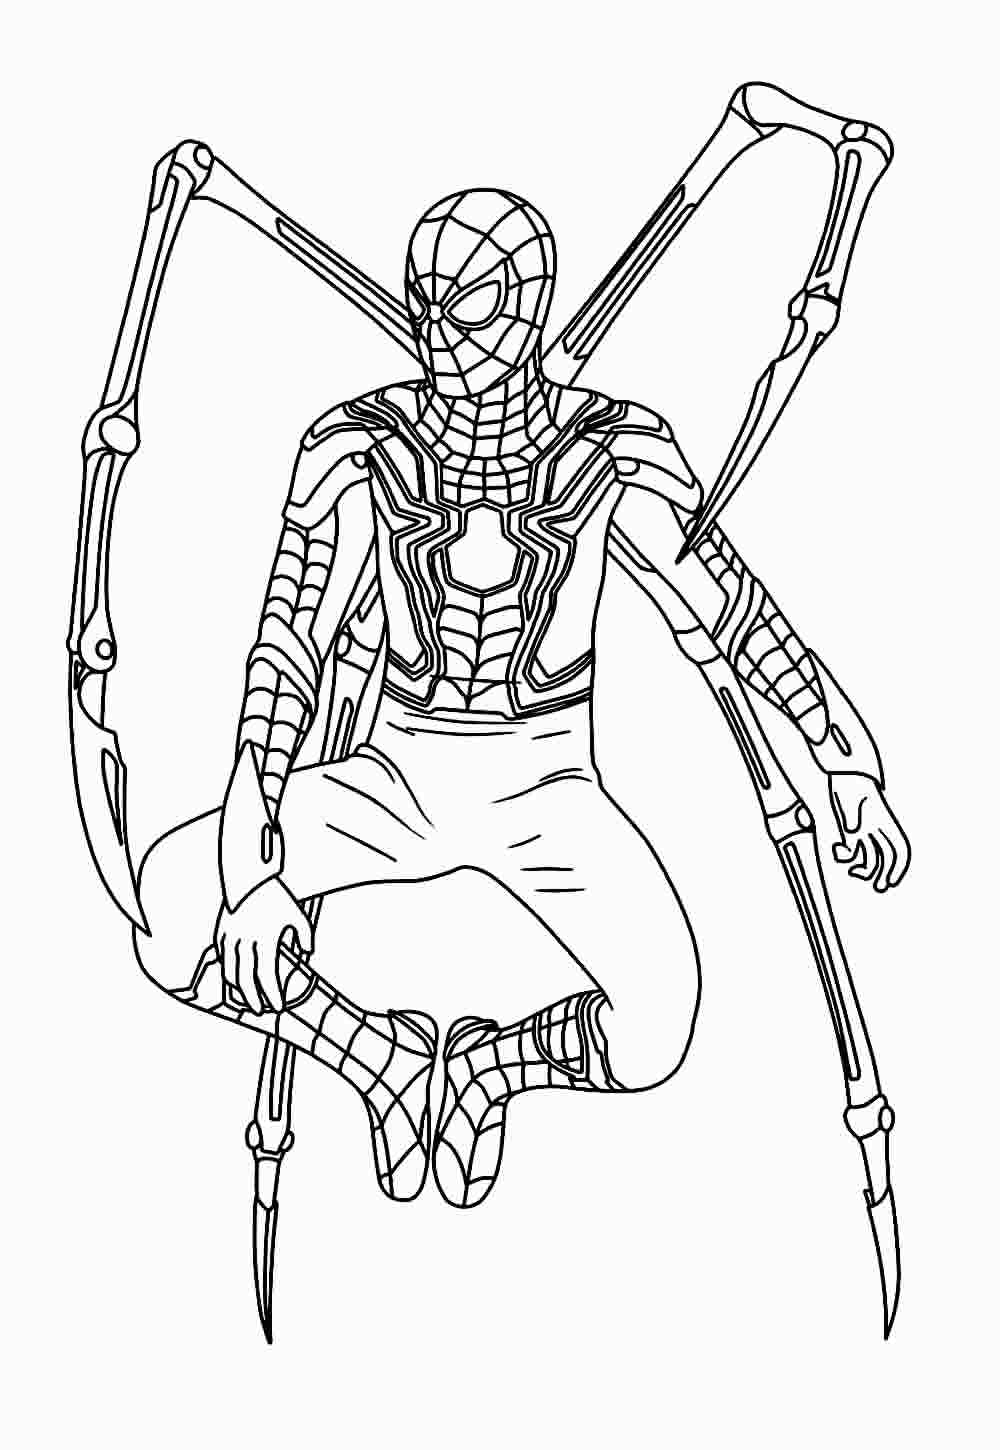 Imagem do Homem-Aranha para colorir